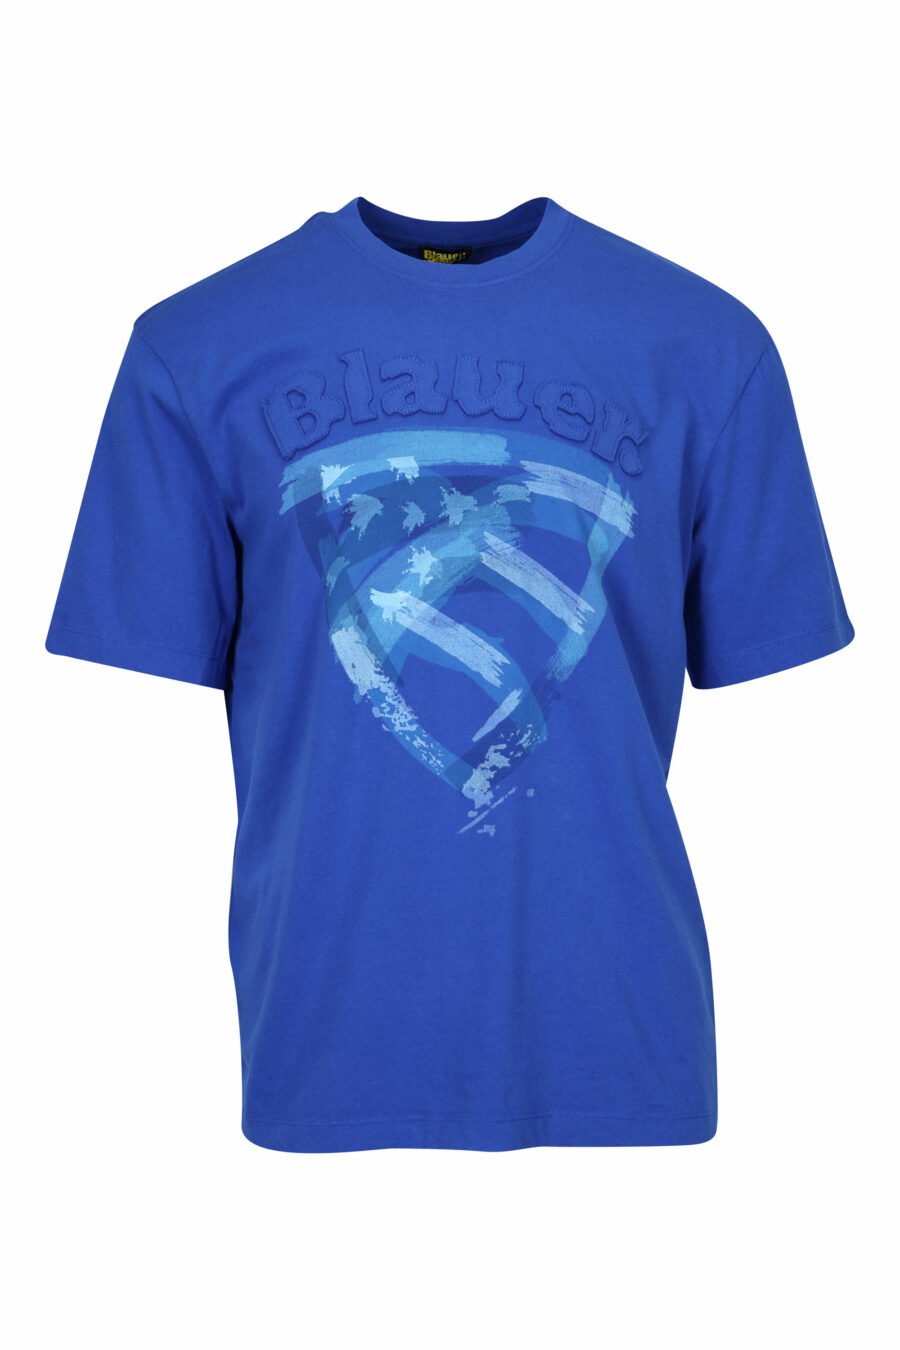 Camiseta azul con maxilogo escudo desgastado - 8058610830472